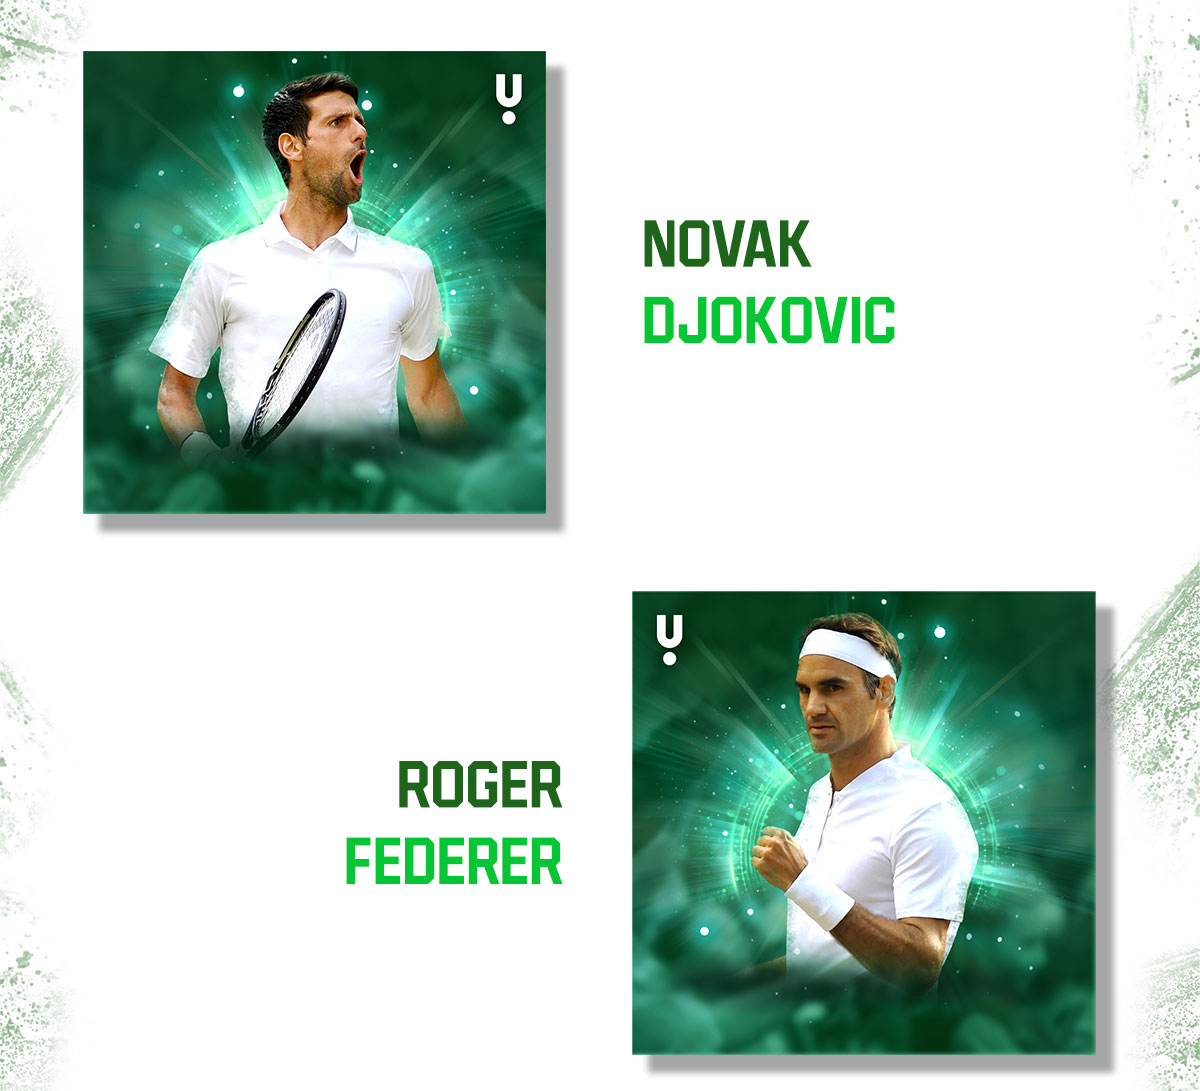 Wimbledon Tennis Top Players